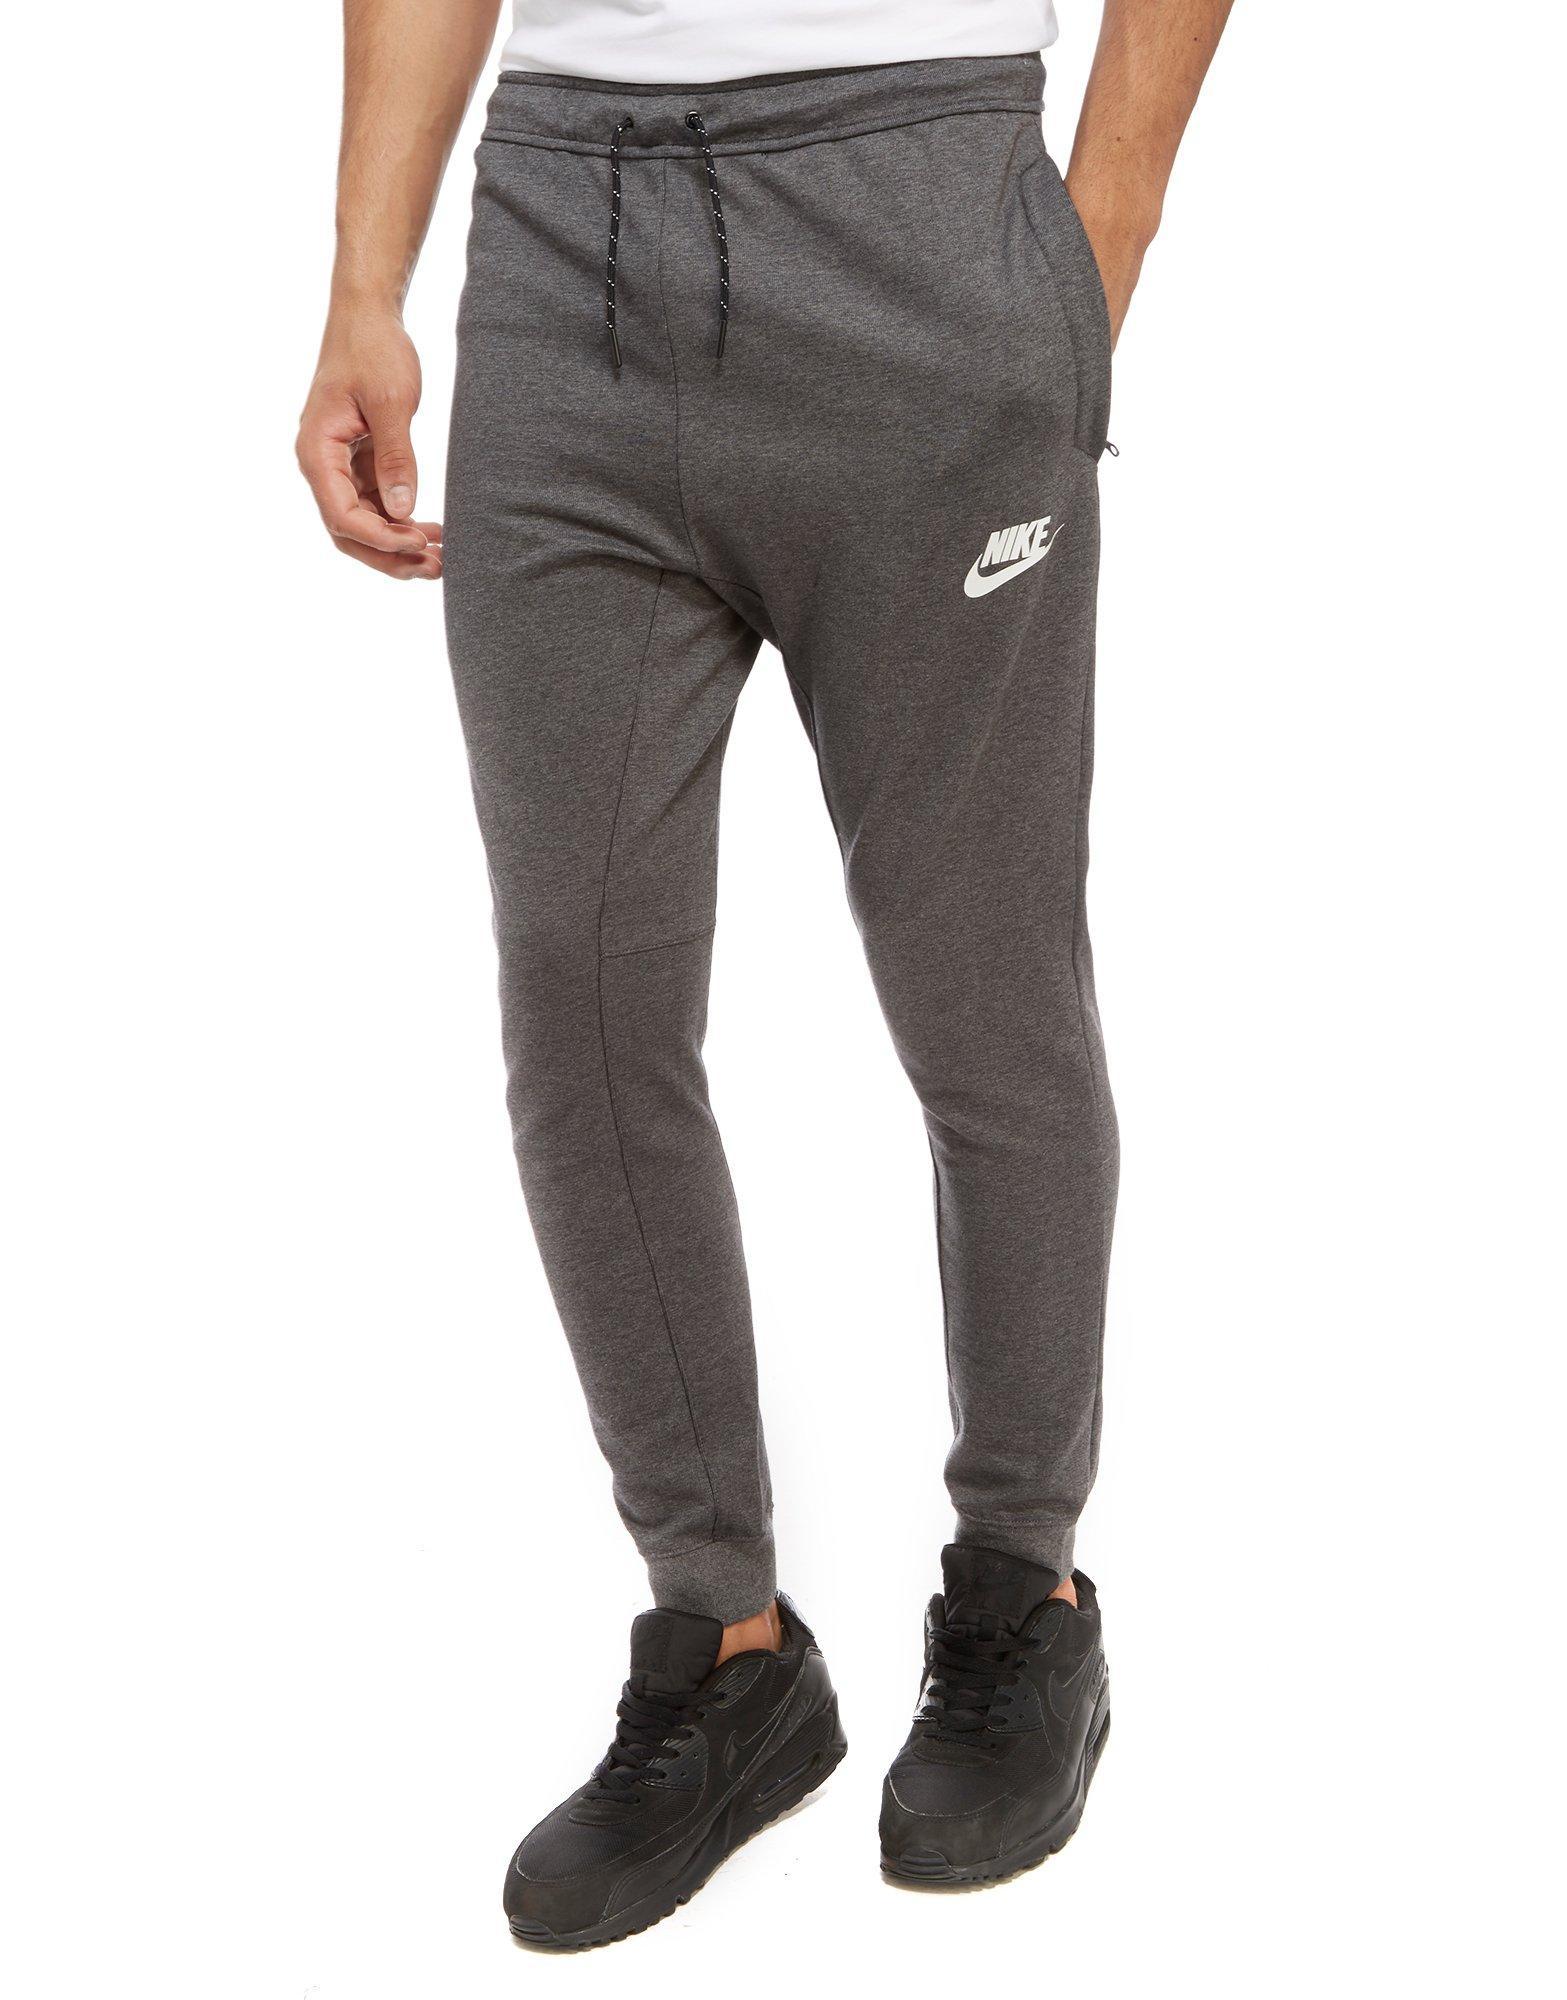 Lyst - Nike Advance Fleece Pants for Men